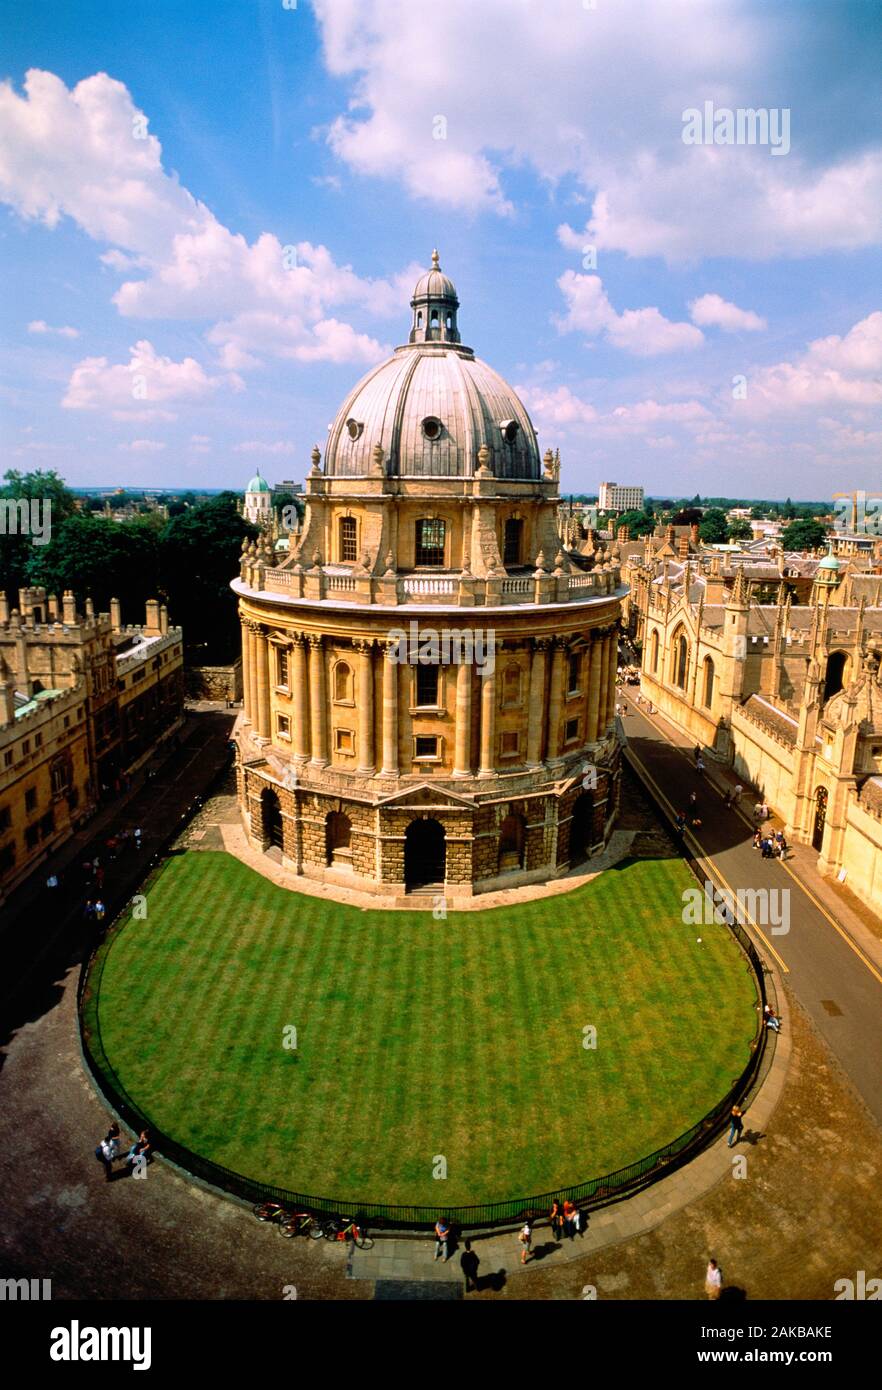 Luftaufnahme von Radcliffe Camera Gebäude, Oxford, England Stockfoto